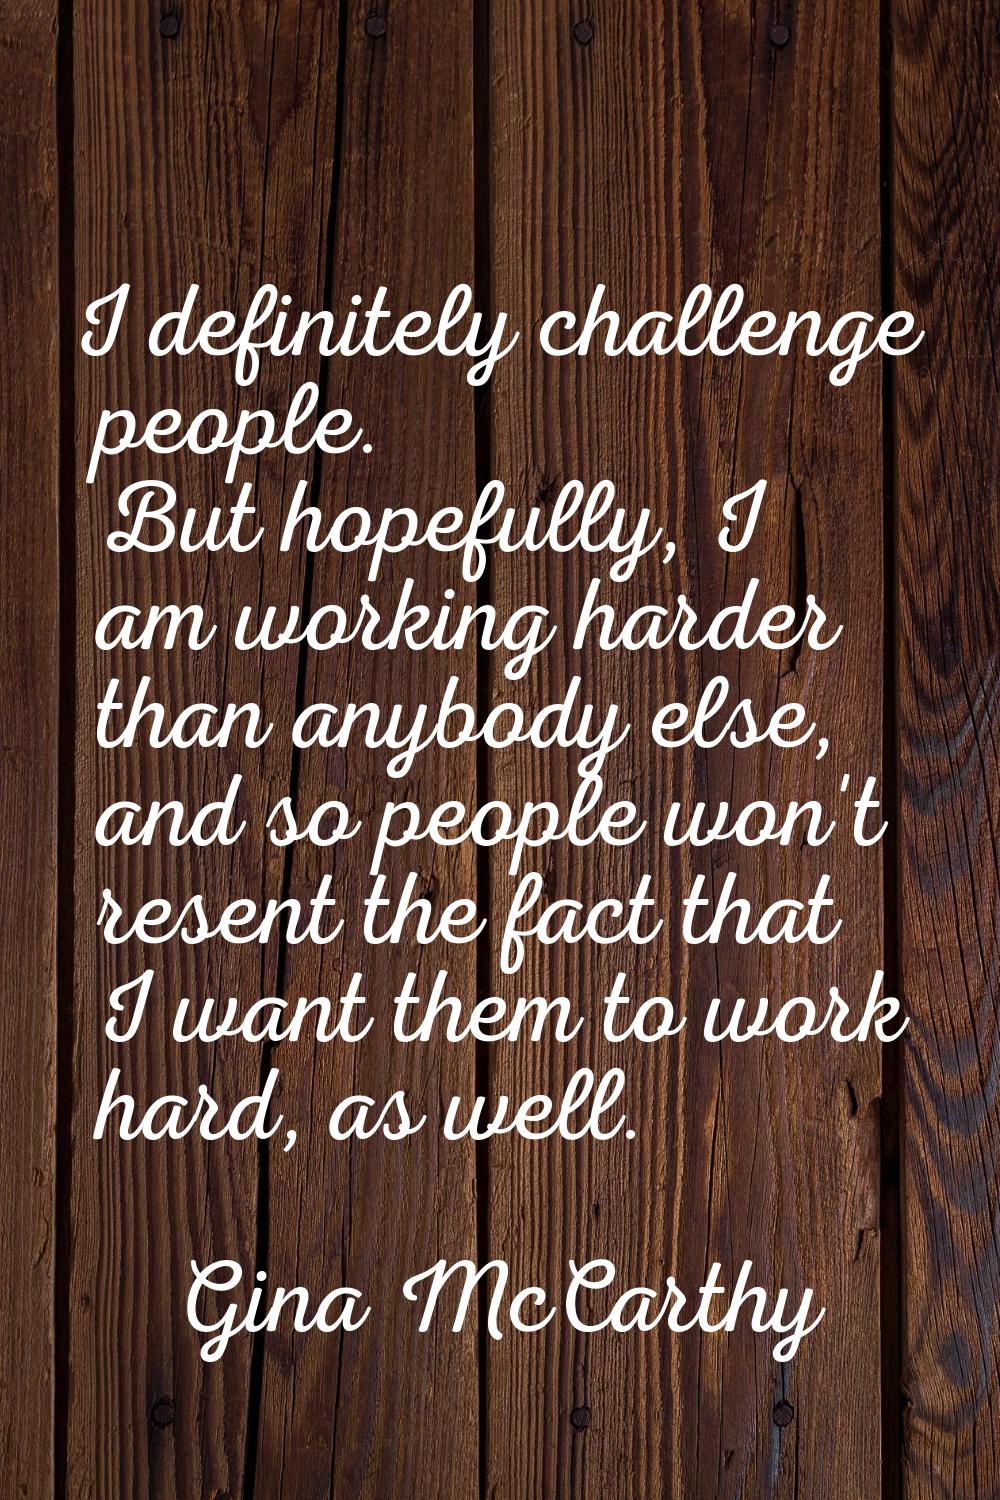 I definitely challenge people. But hopefully, I am working harder than anybody else, and so people 